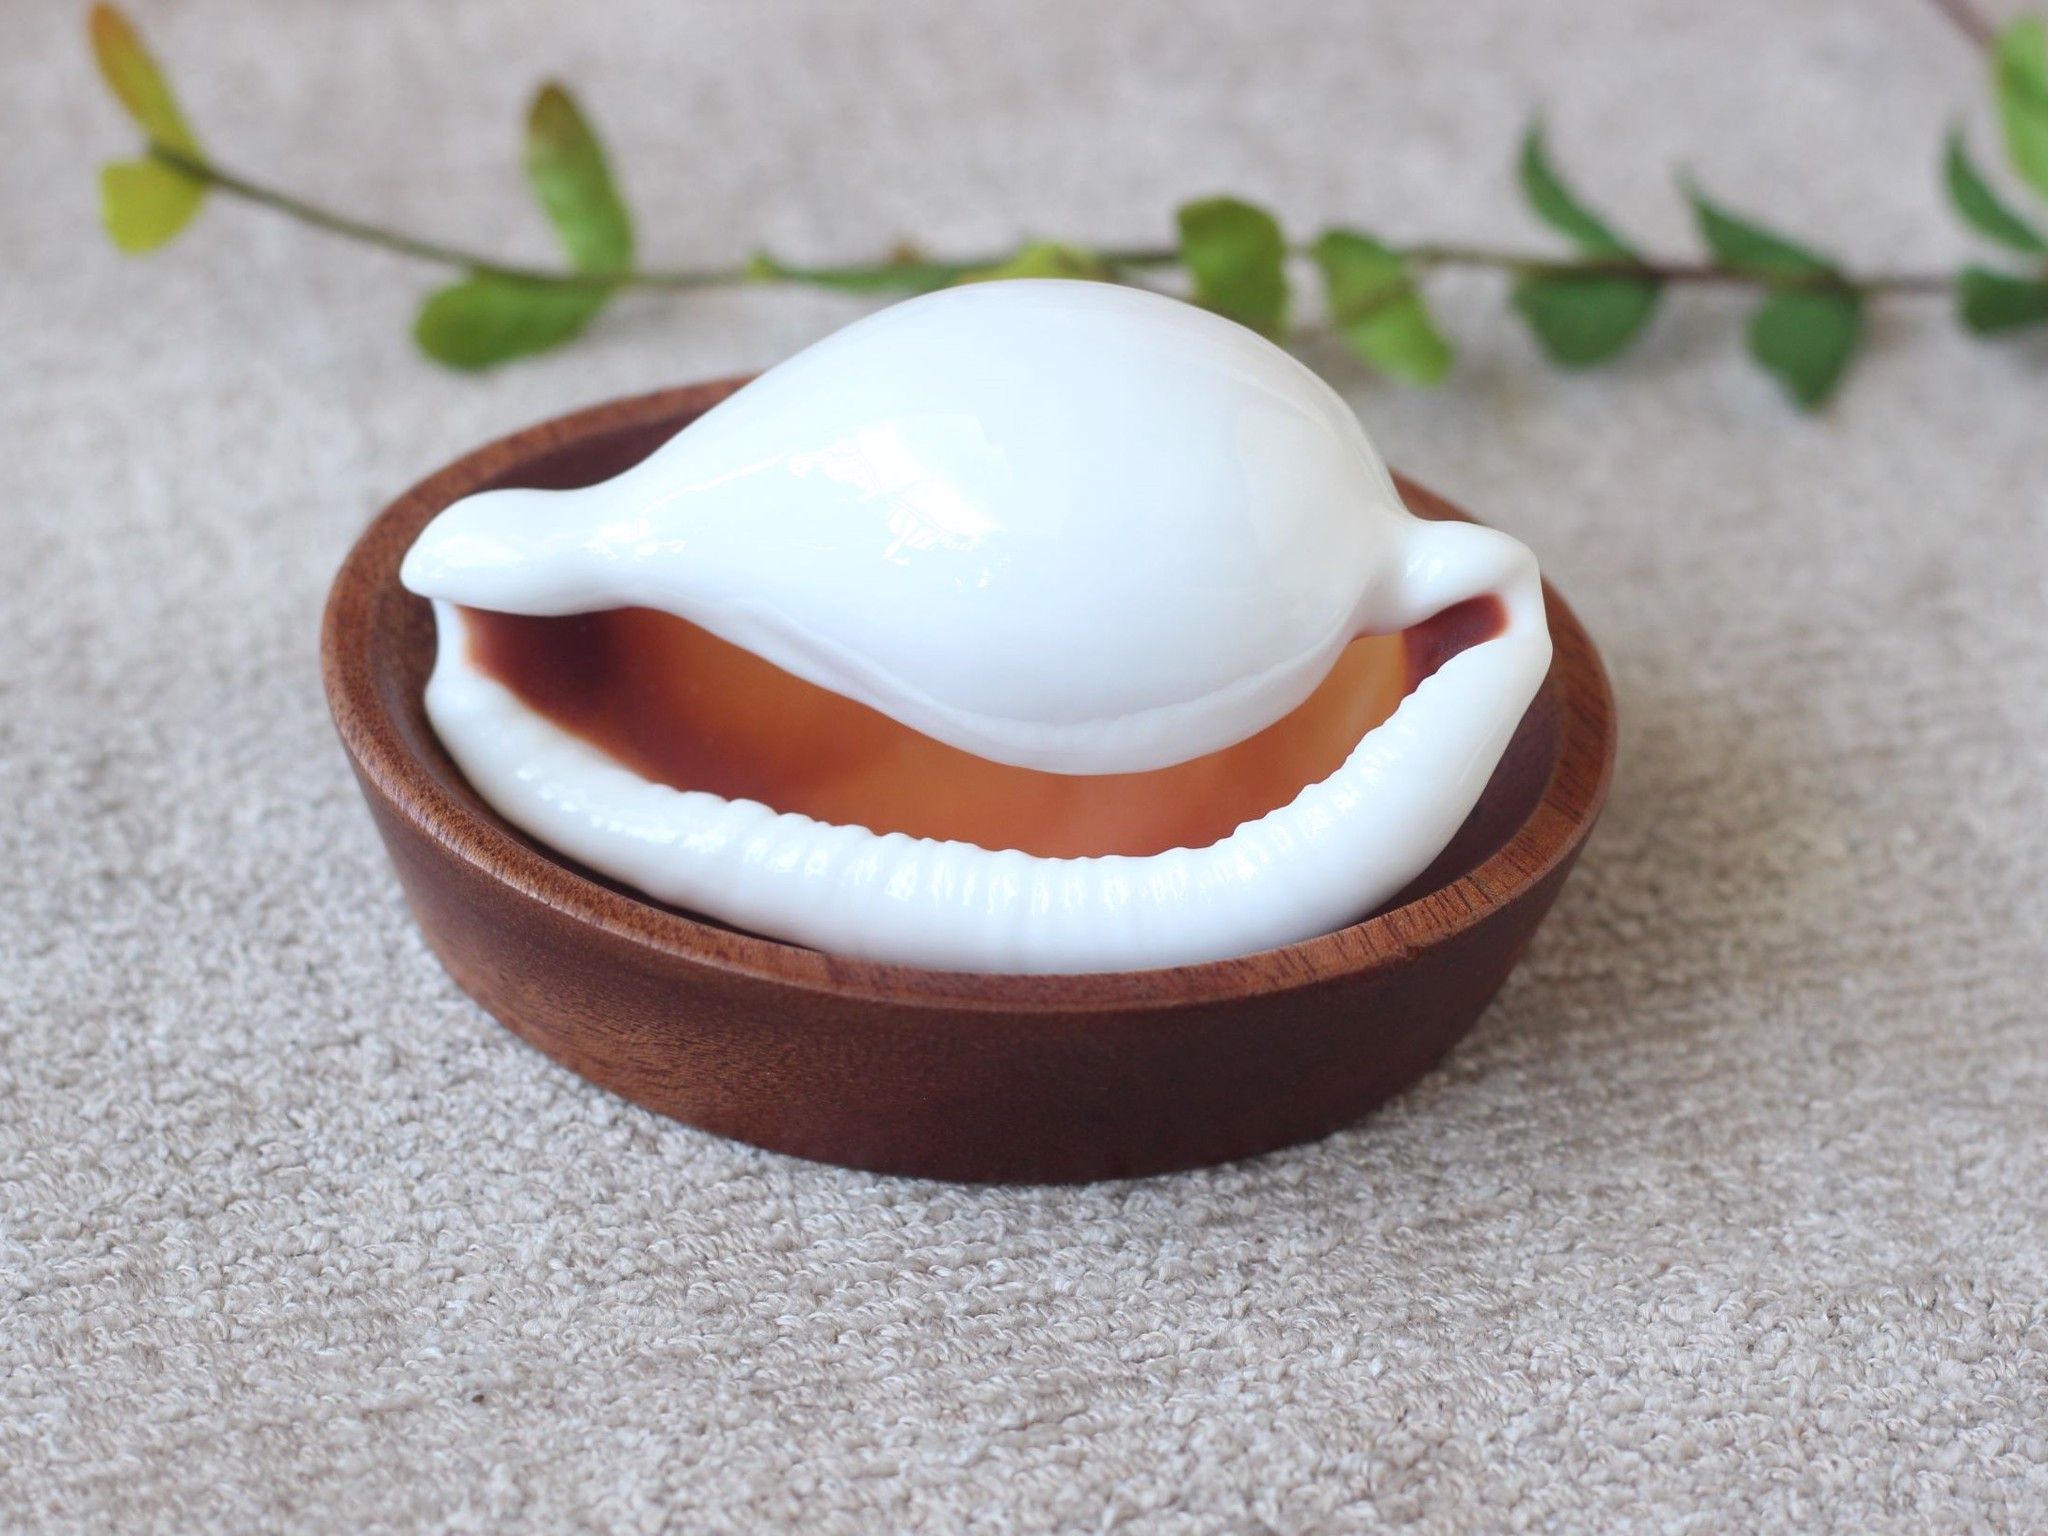  Vỏ Ốc Cò Trắng/Egg Cowry Shell (1 vỏ) 